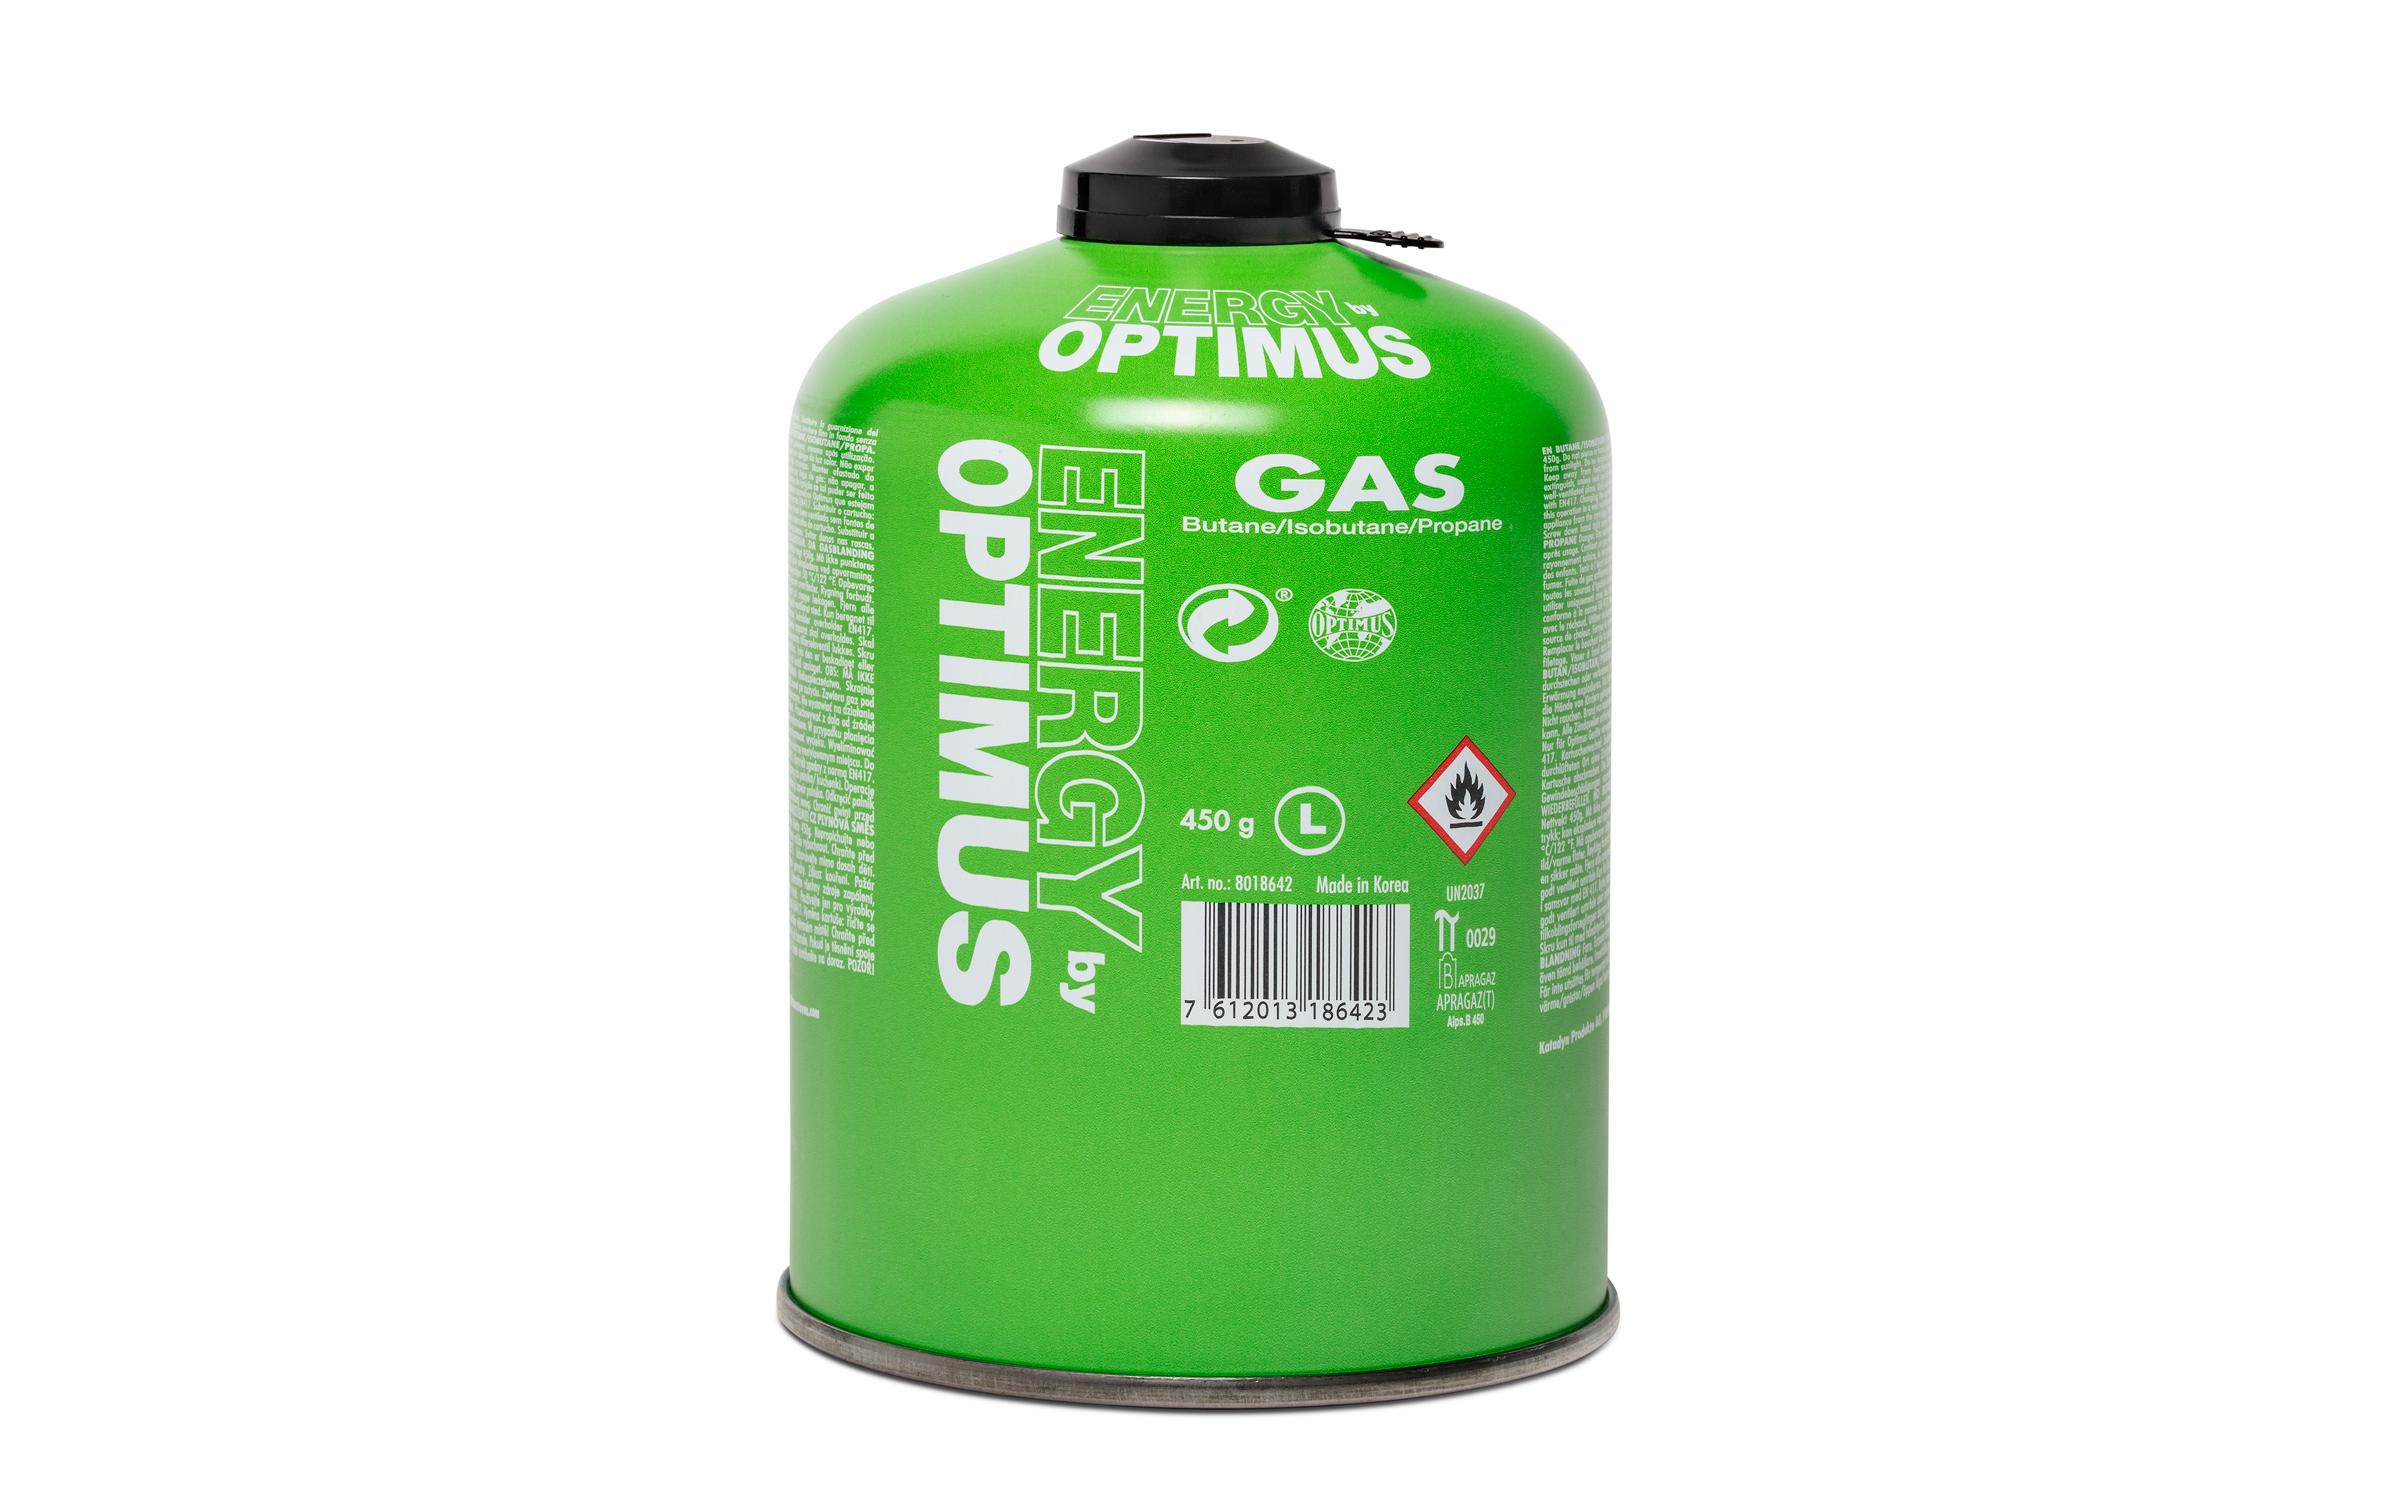 Optimus Gaskartusche 450 g